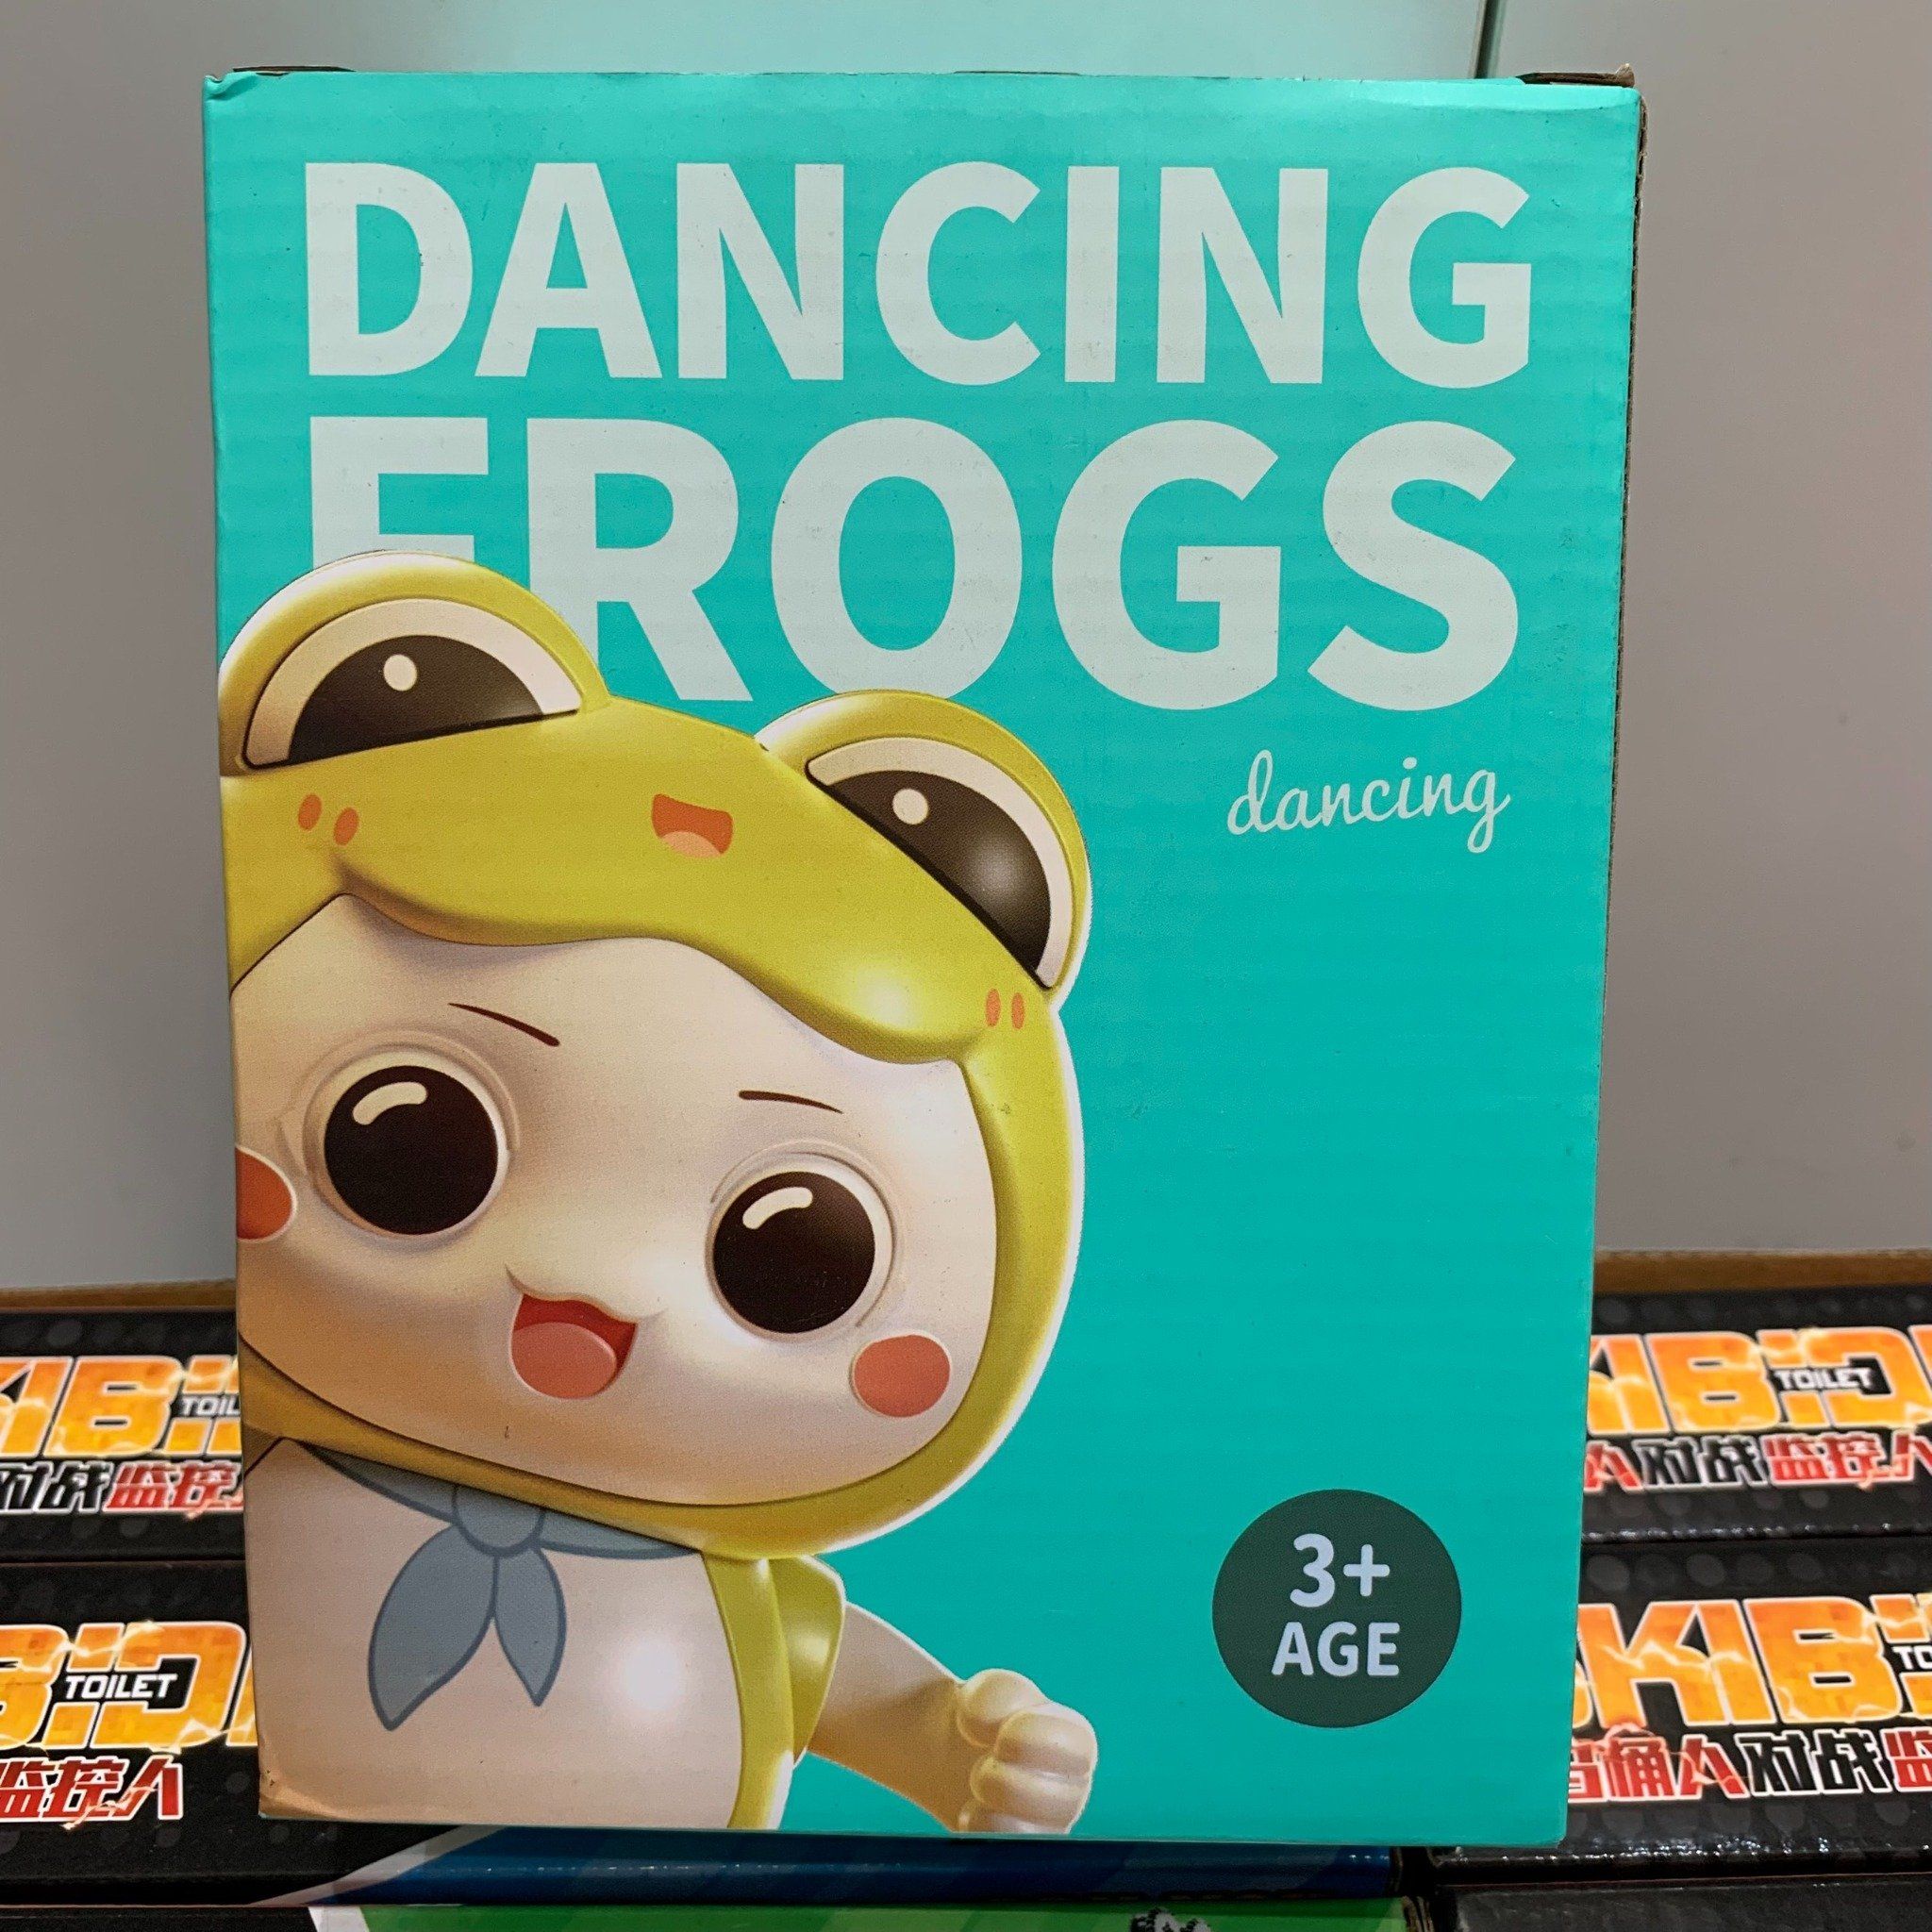  Đồ chơi vận động: Hộp bé Ếch nhảy múa có nhạc_ Dangcing Frogs (dùng pin), +3ages+, Model 735-663 